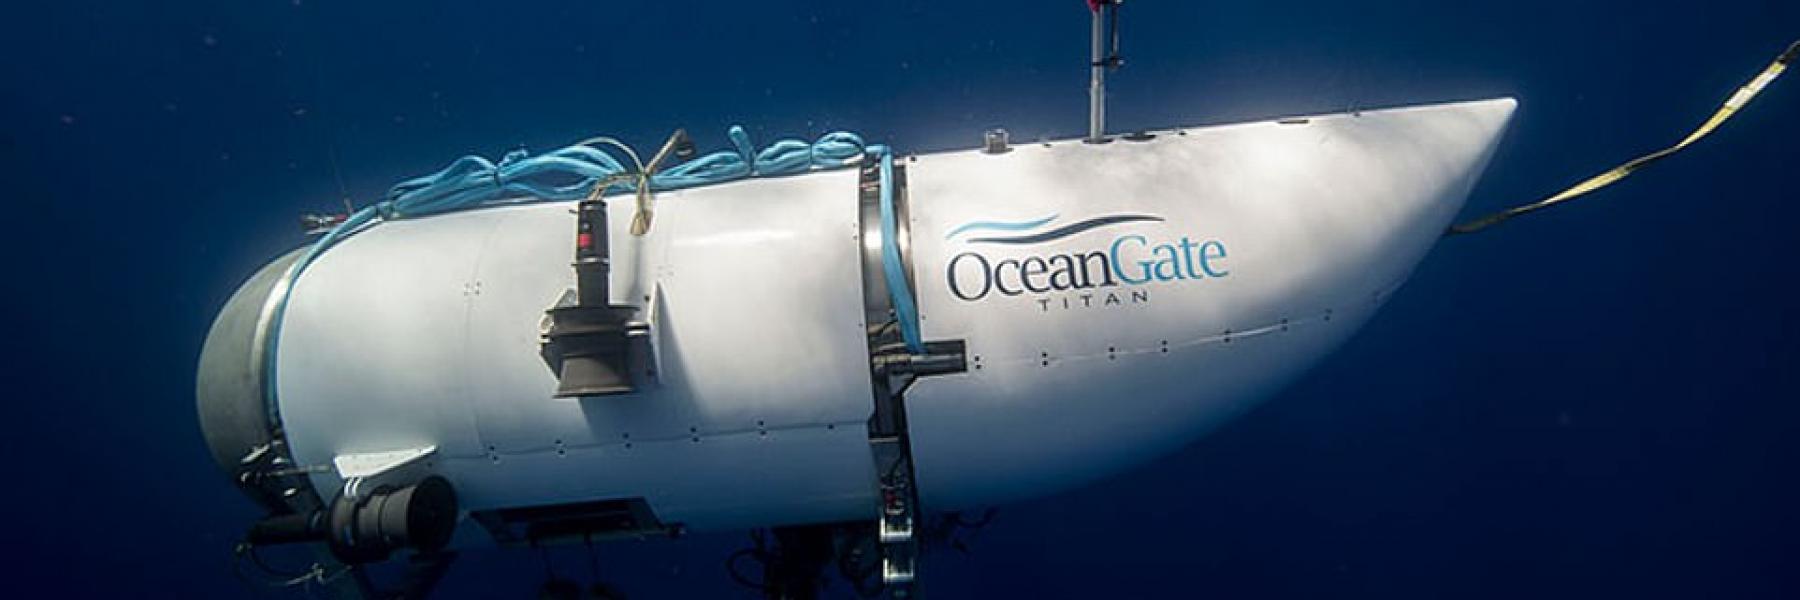 الكشف  عن أحدث صور حطام لسفينة تيتانيك على عمق 12000 قدم تحت سطح المحيط